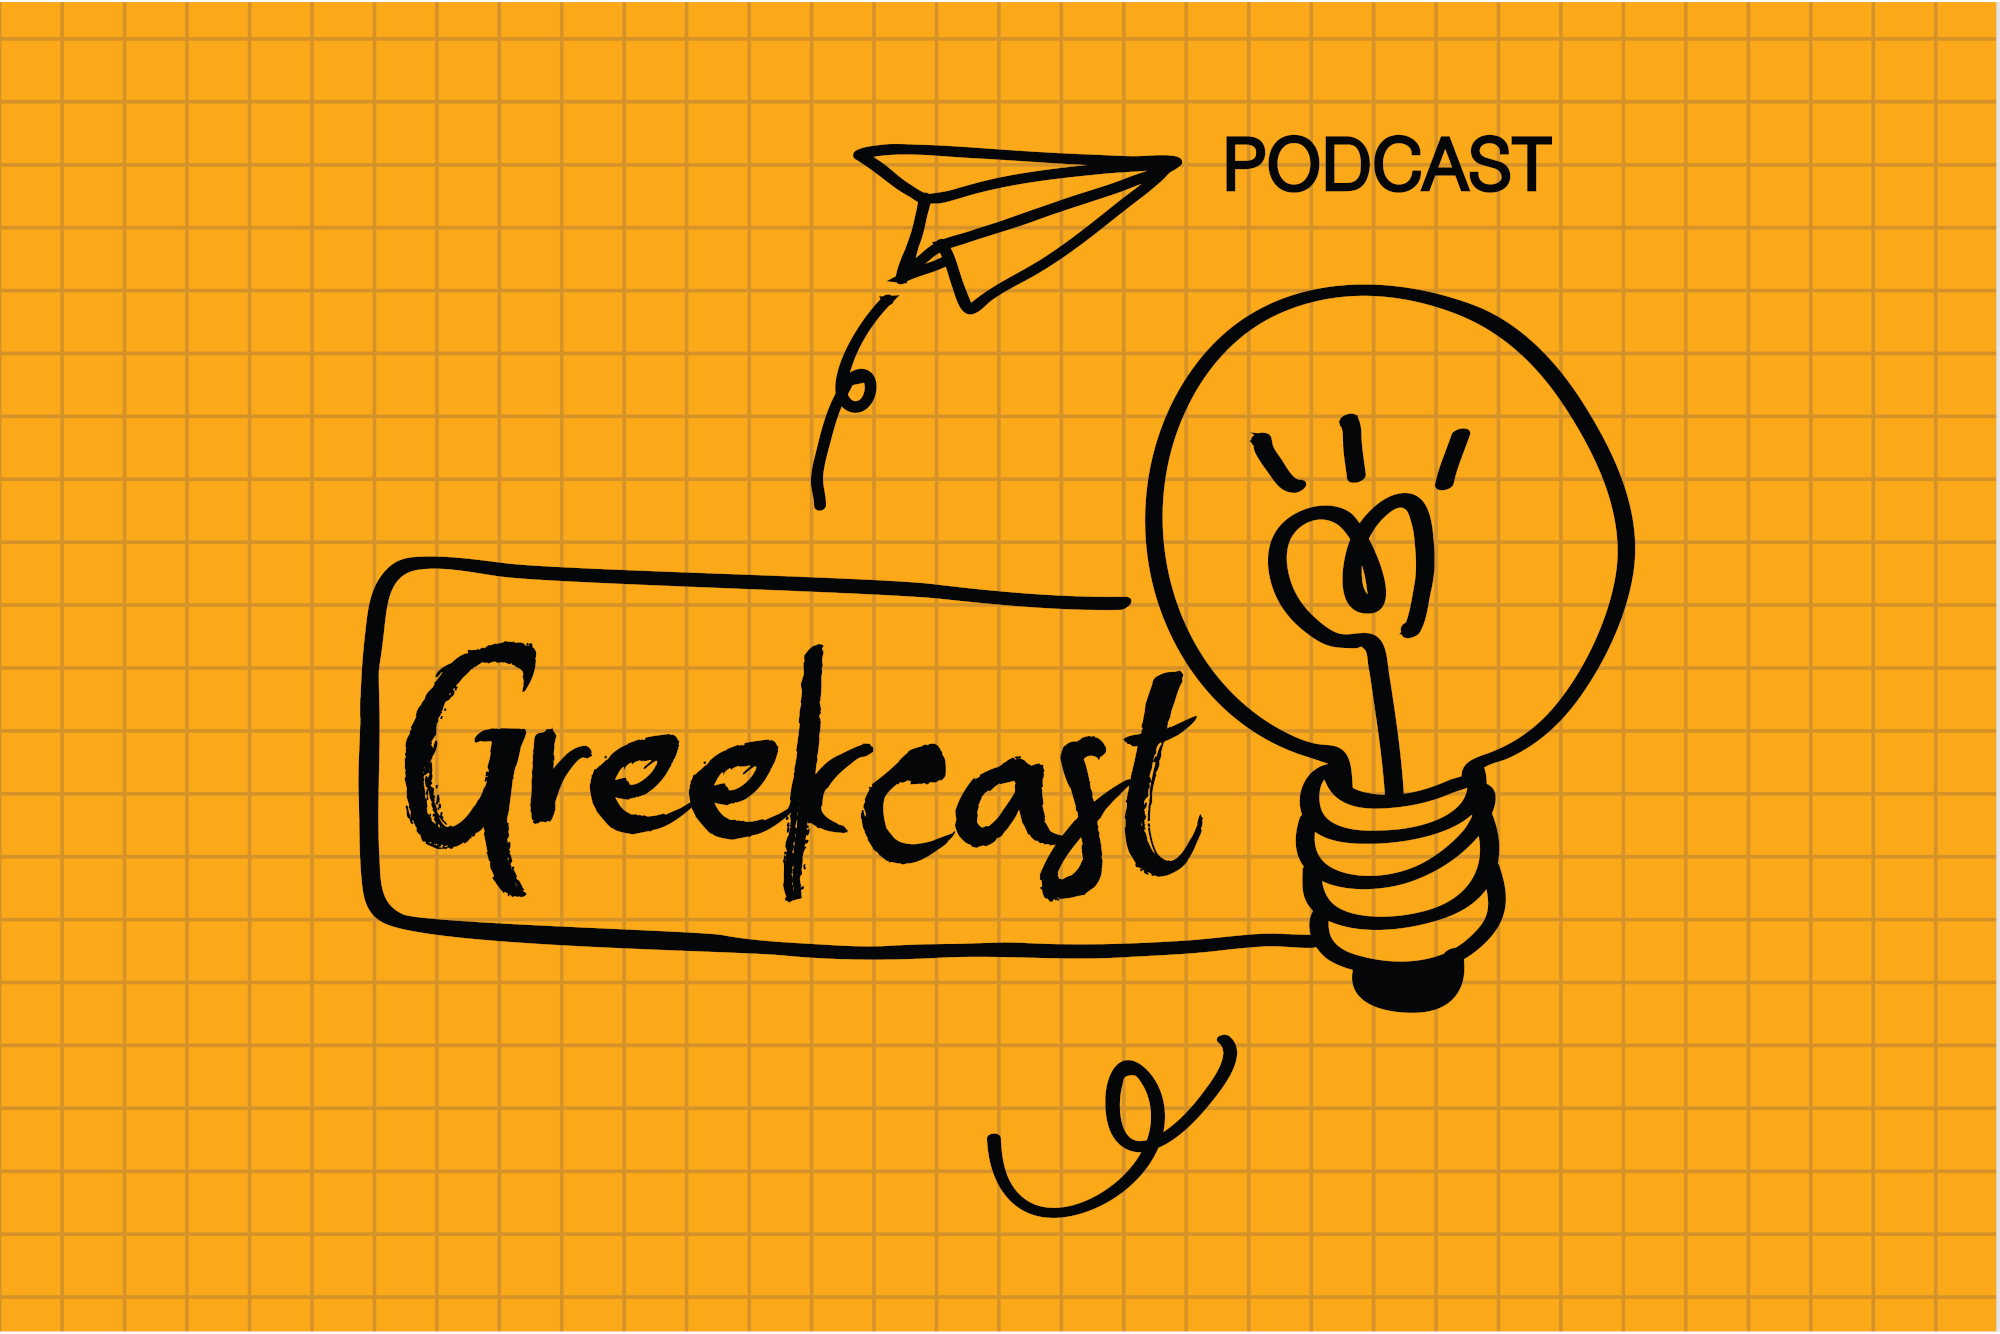 Greekcast Podcast